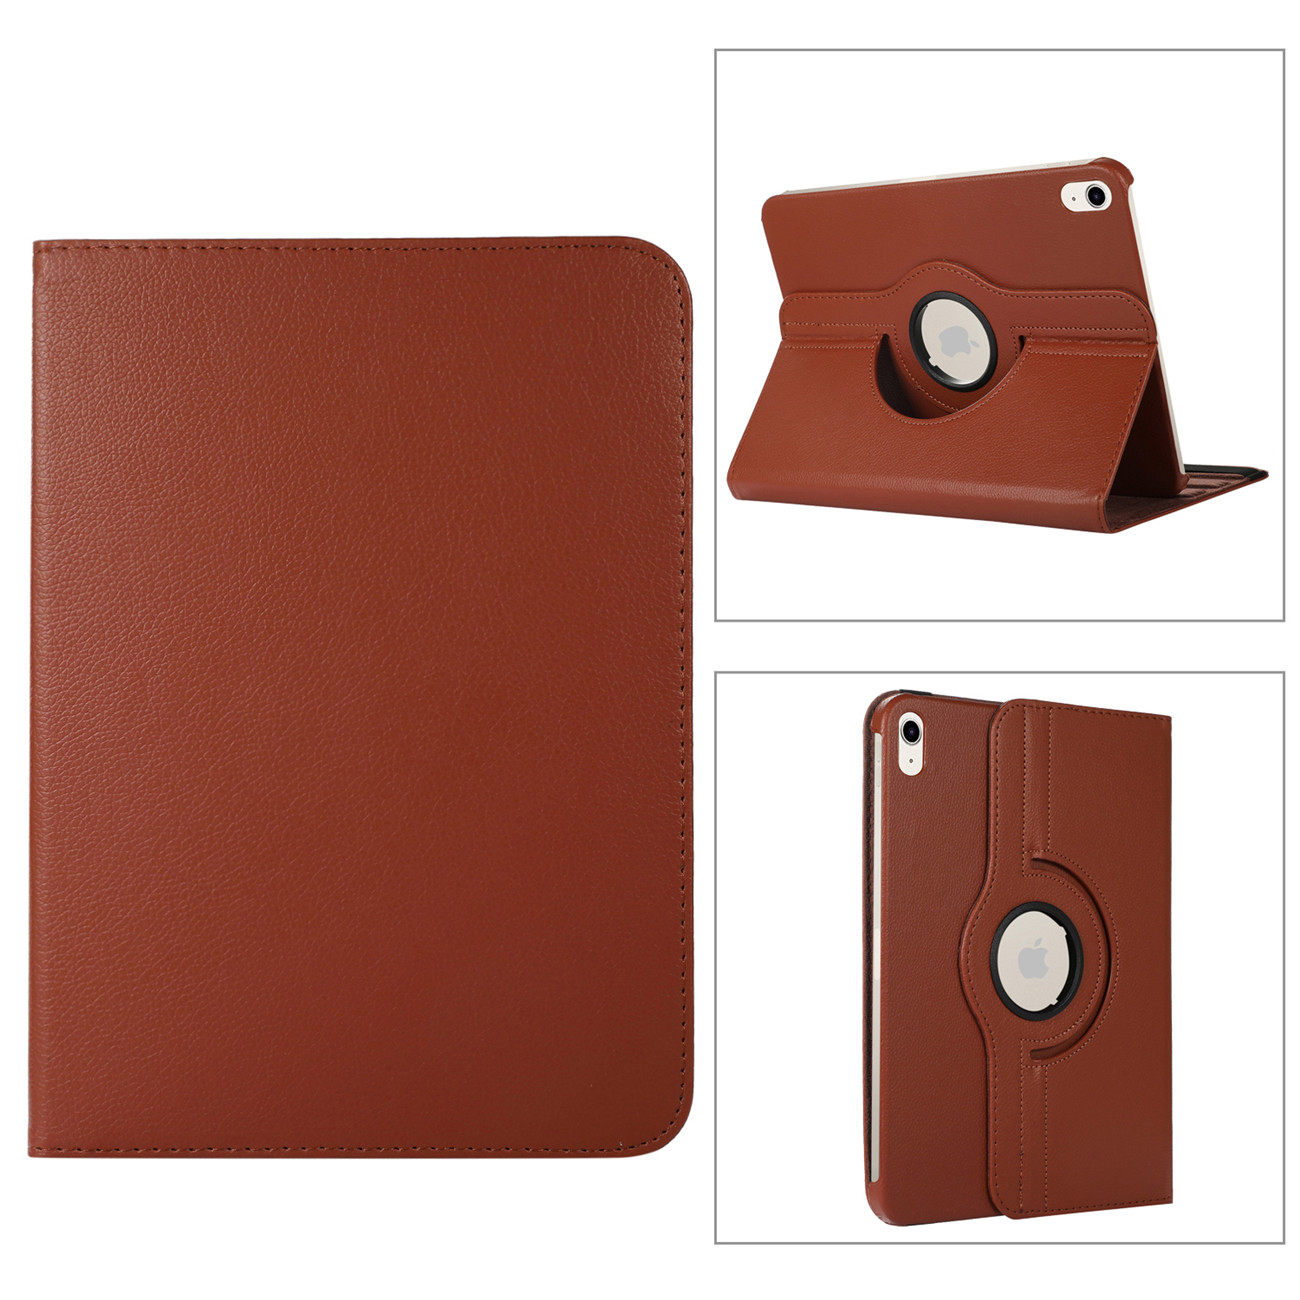 Smart Leather Folio Case Cover For iPad 5/6/7/8/9th Gen Mini 6 Air